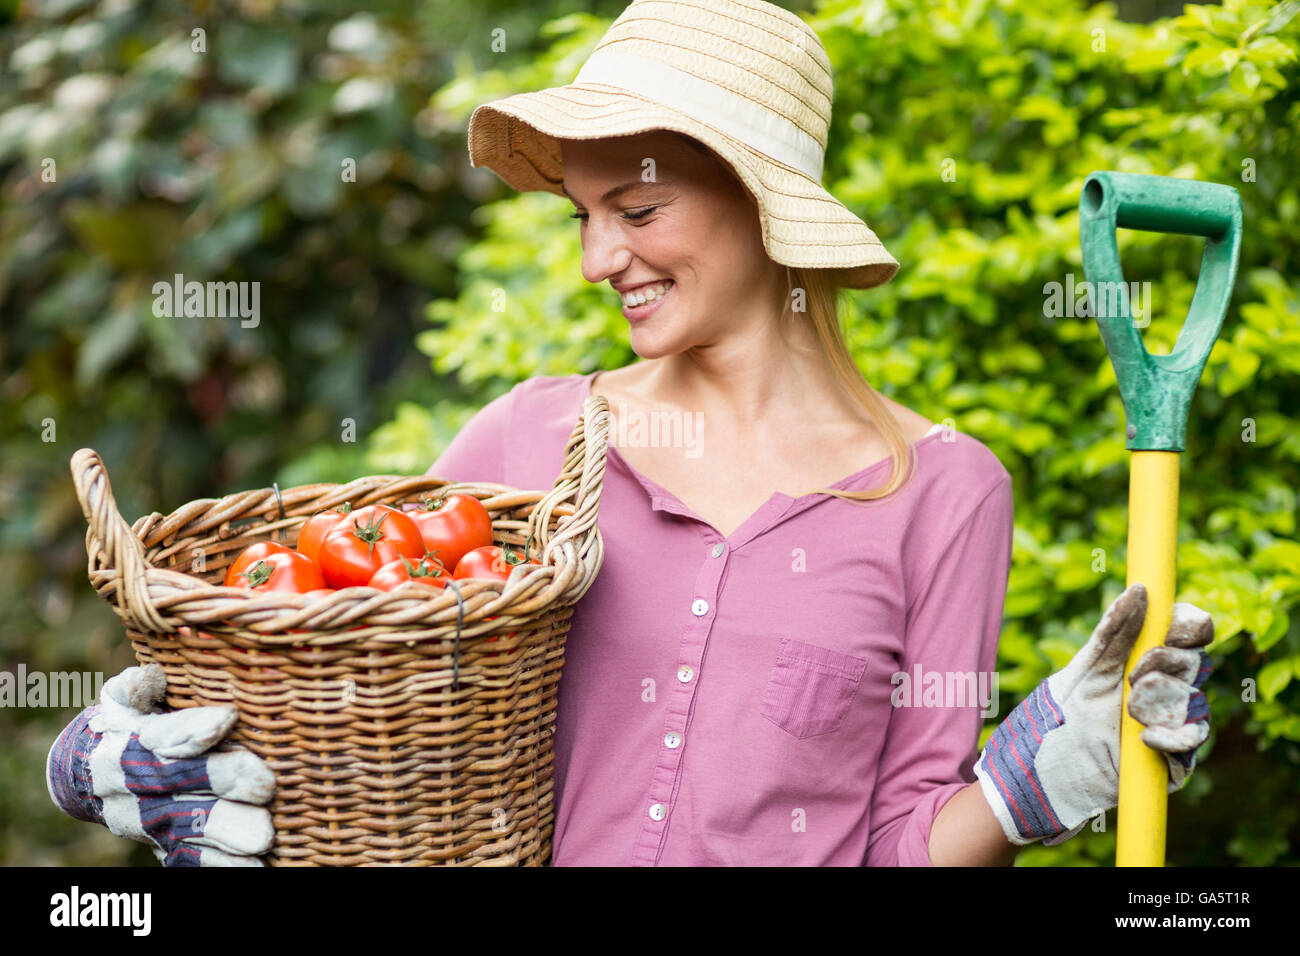 Glücklich Gärtner halten Tomate Korb und Arbeit-Werkzeugs Stockfoto